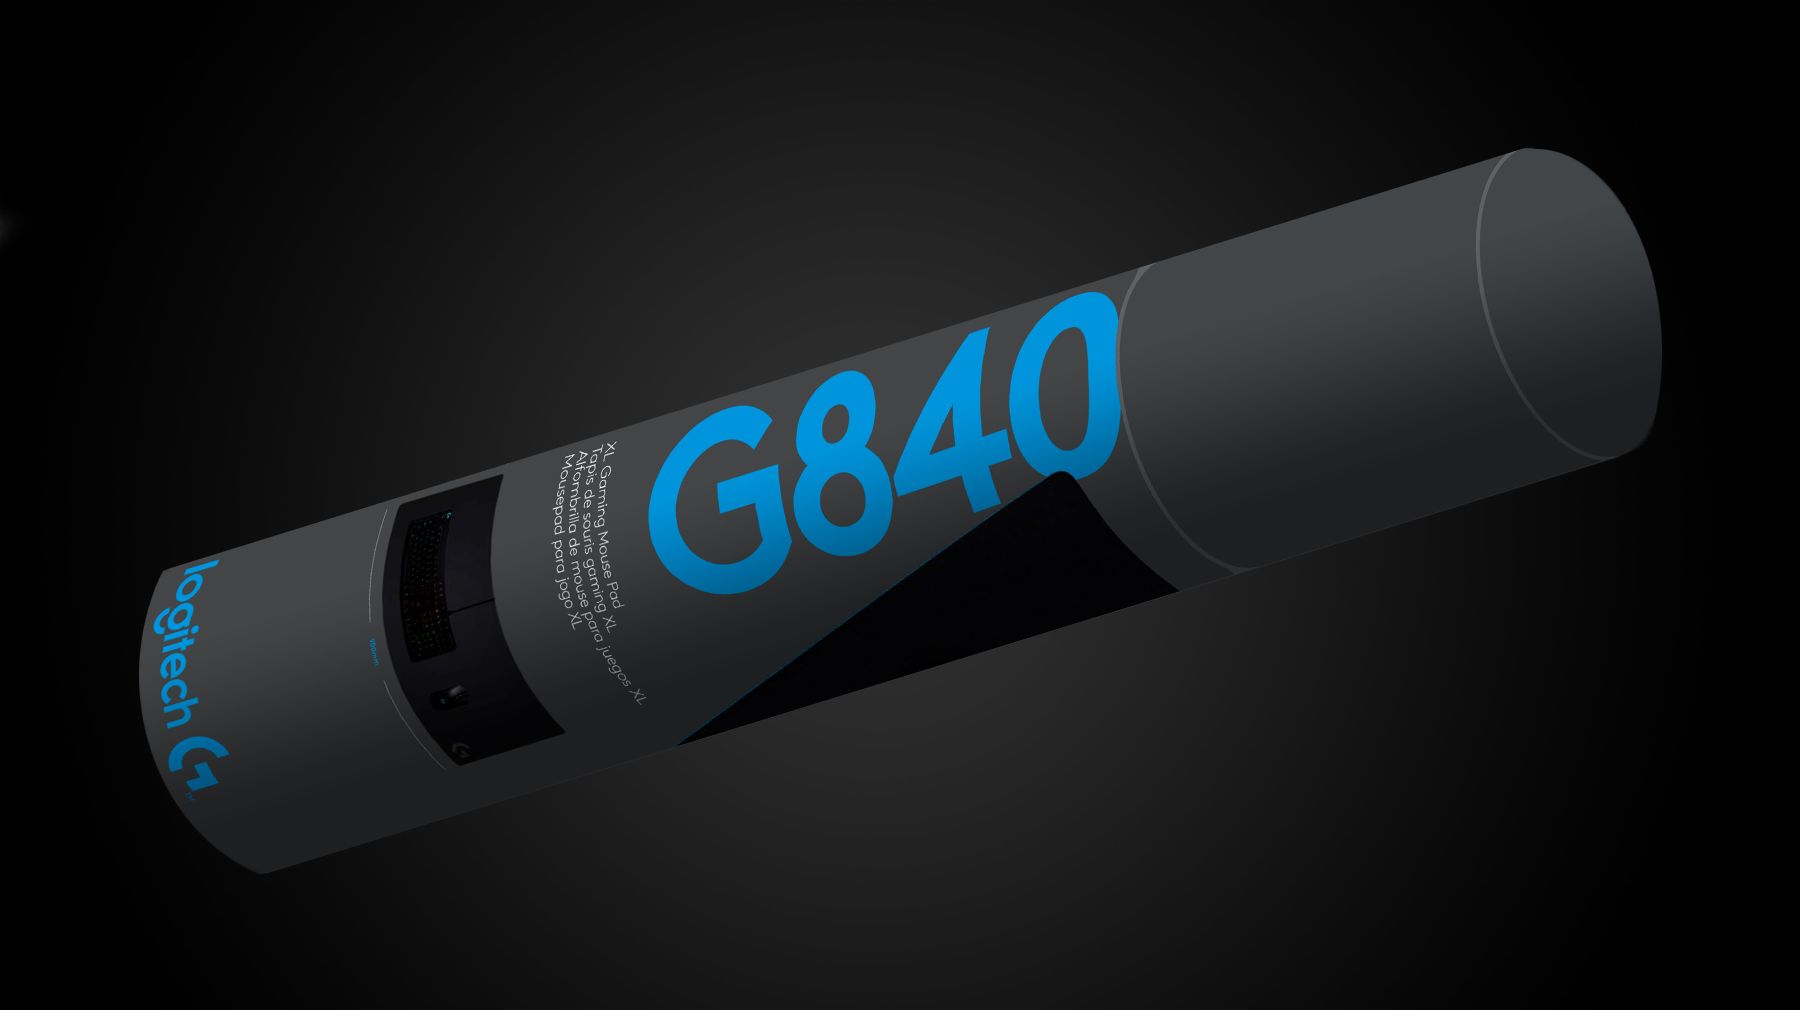 G480 XL